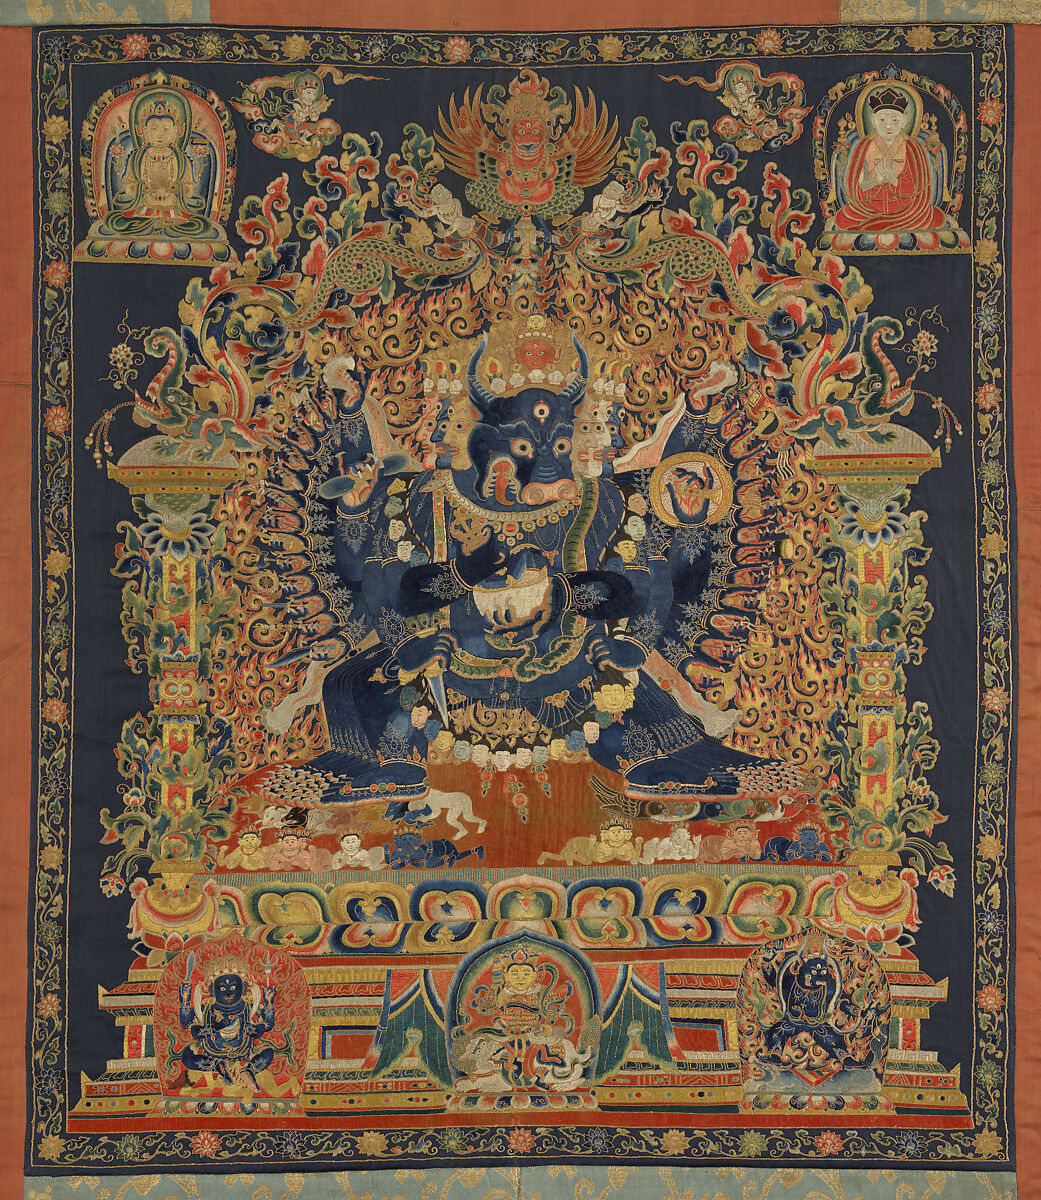 The Deity Vajrabhairava, Tantric Form of the Bodhisattva Manjushri, Embroidery in silk, metallic thread, and horsehair on silk satin, China